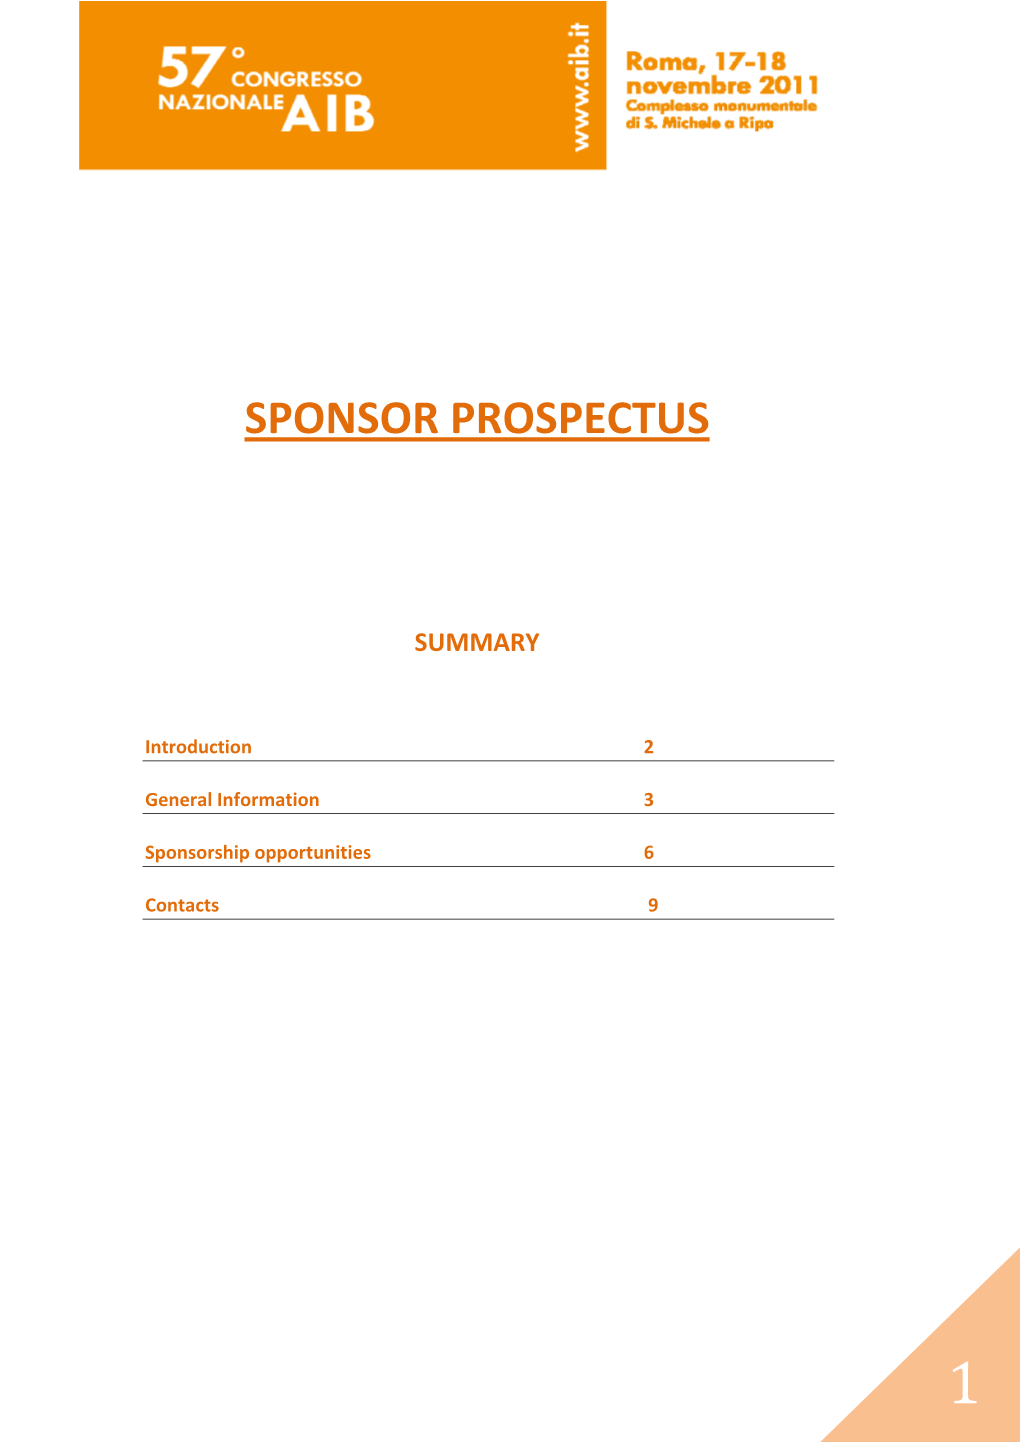 Sponsor Prospectus